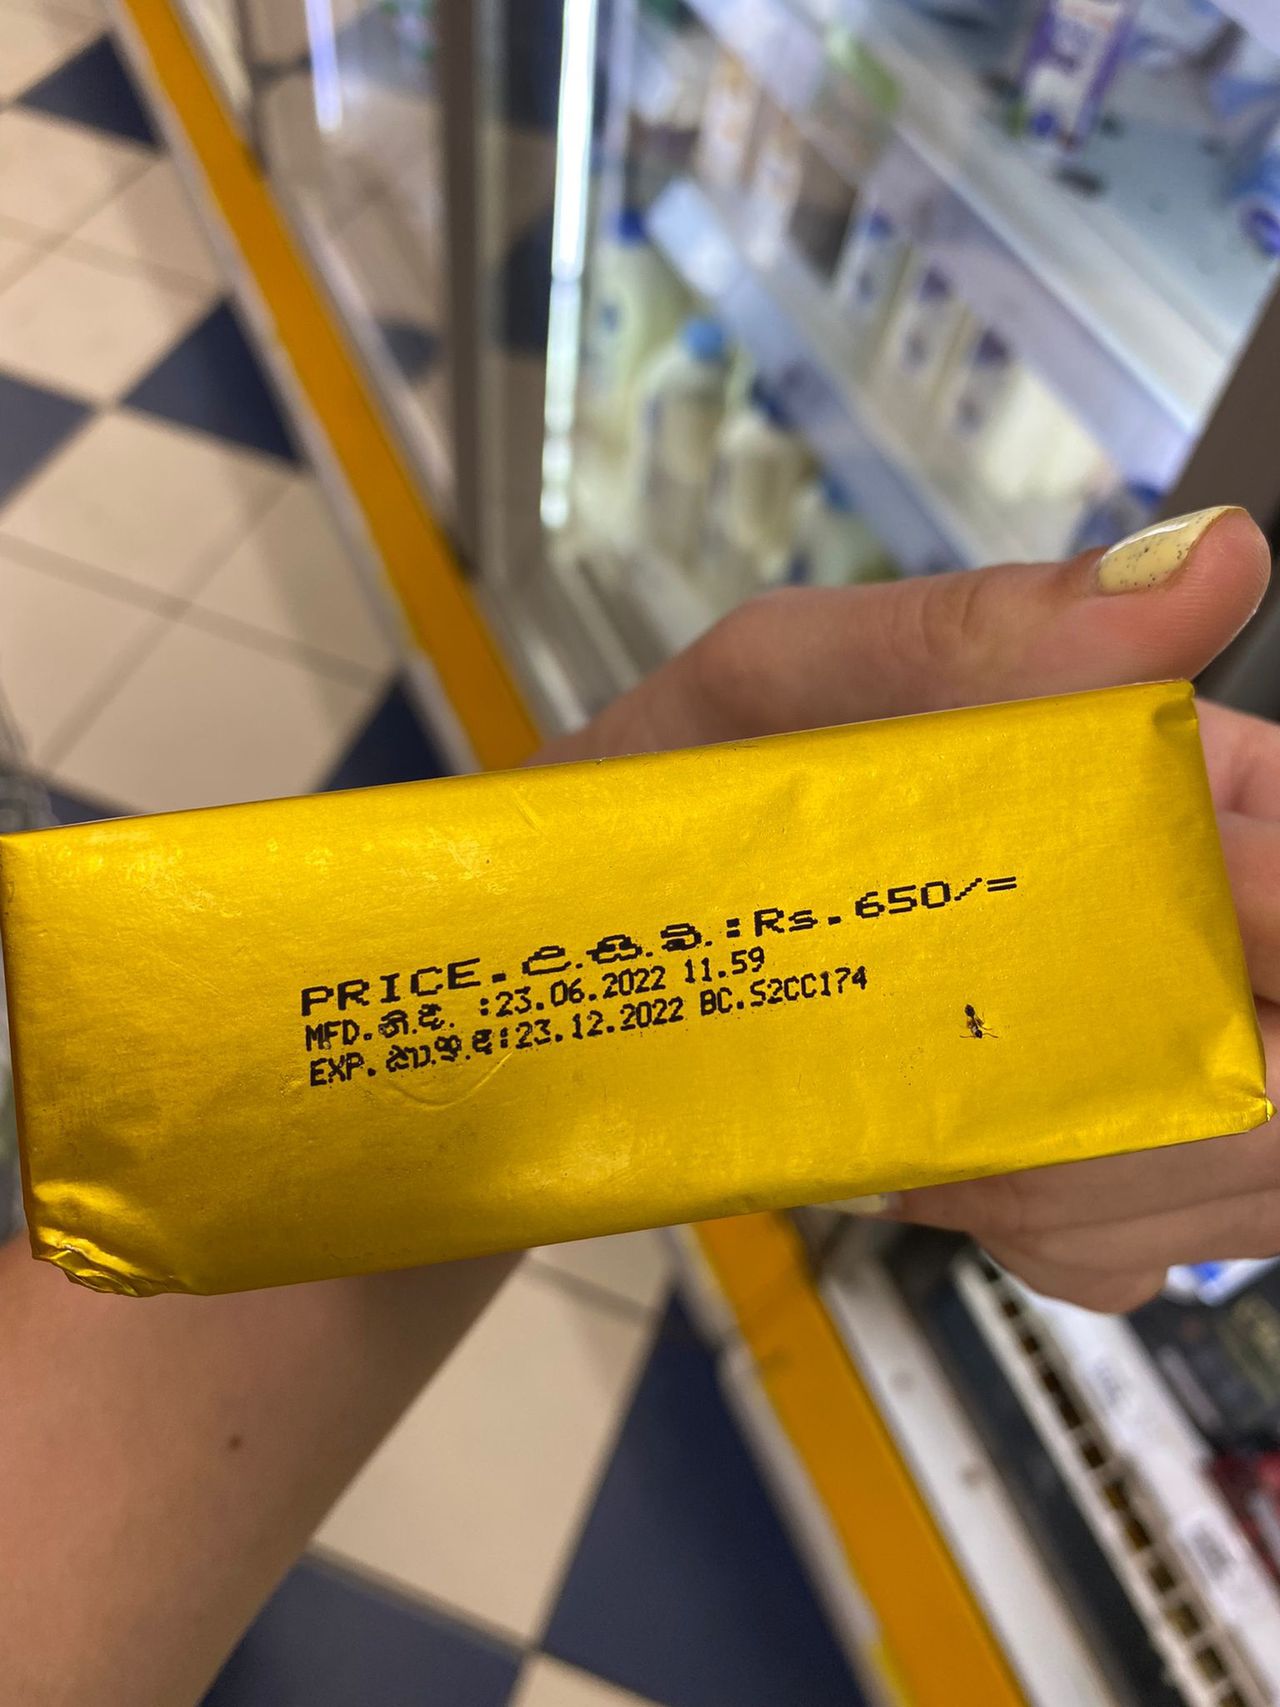 Cena kostki masła widoczna na opakowaniu